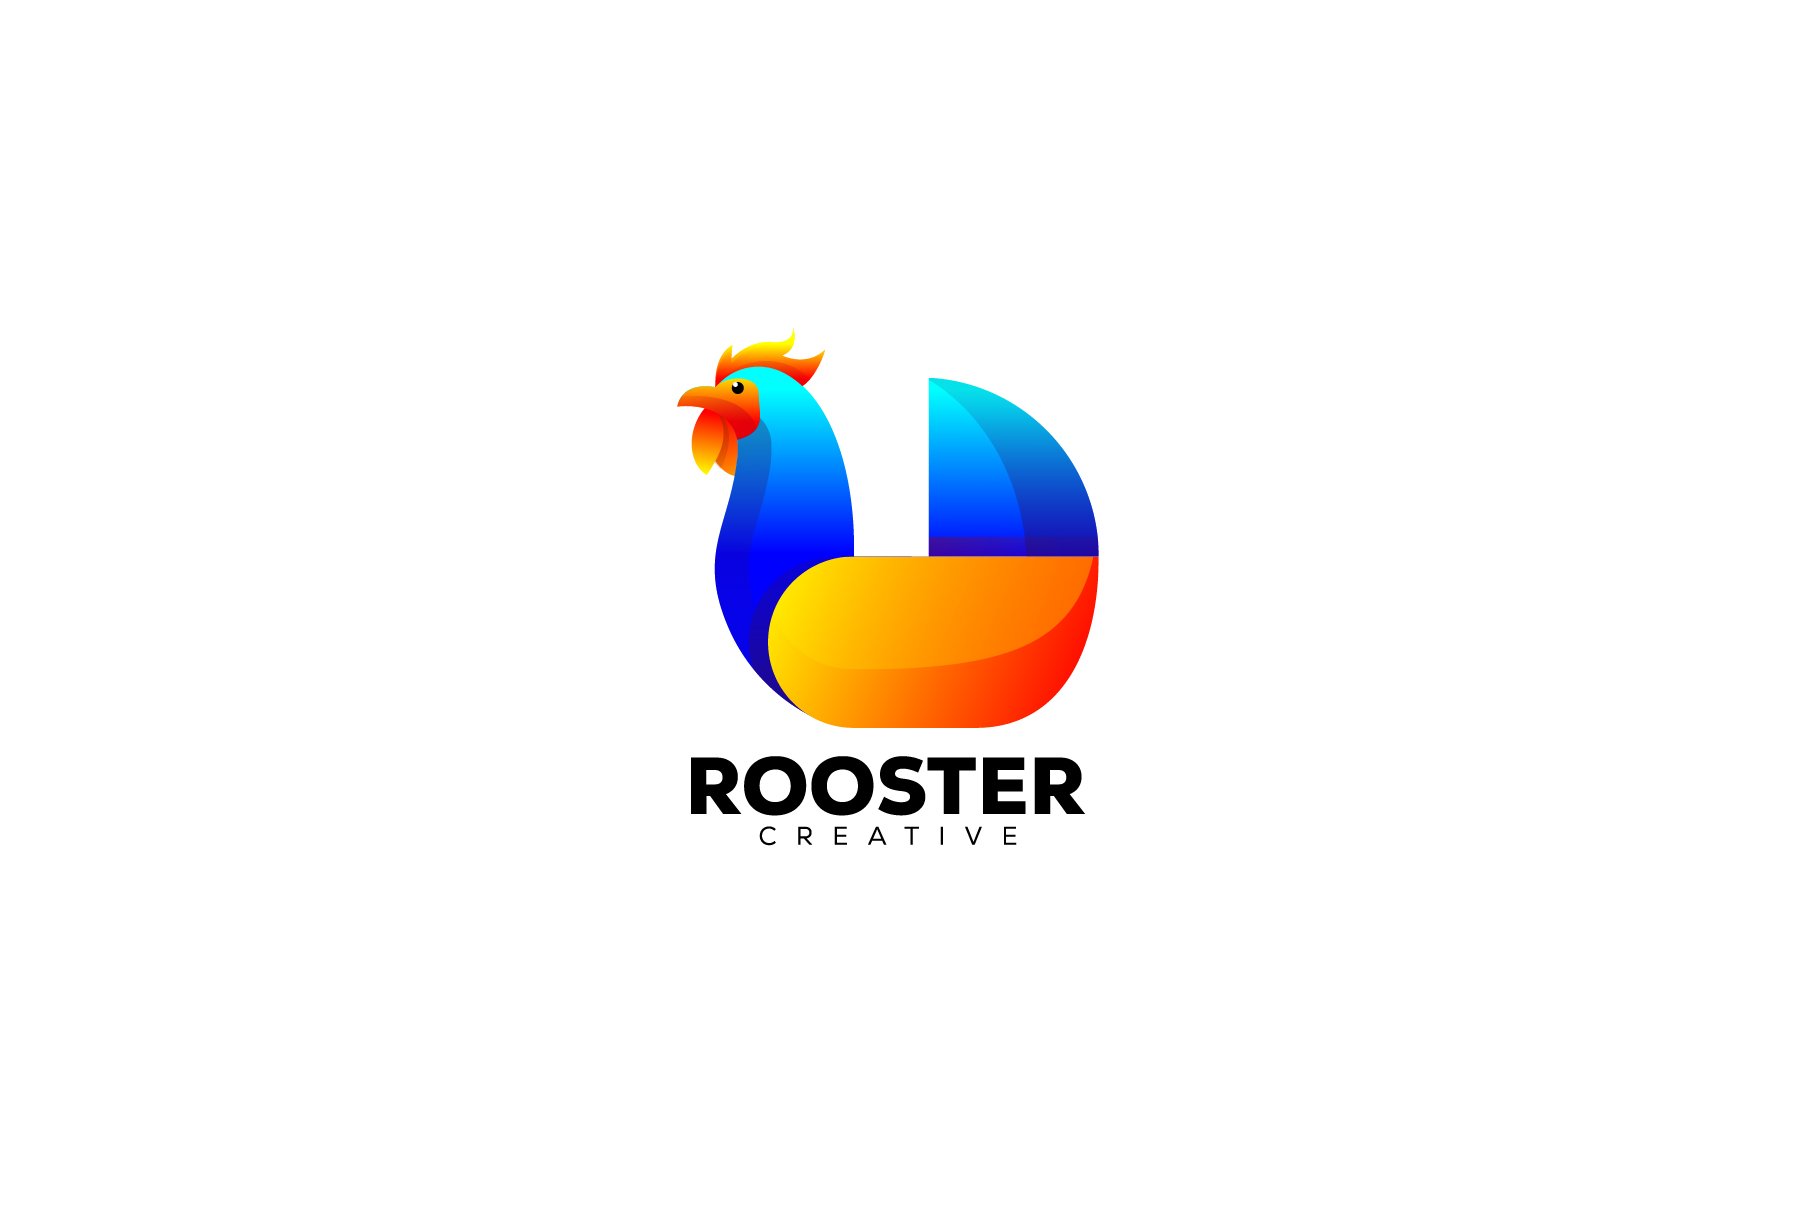 rooster logo colorful design illustr cover image.